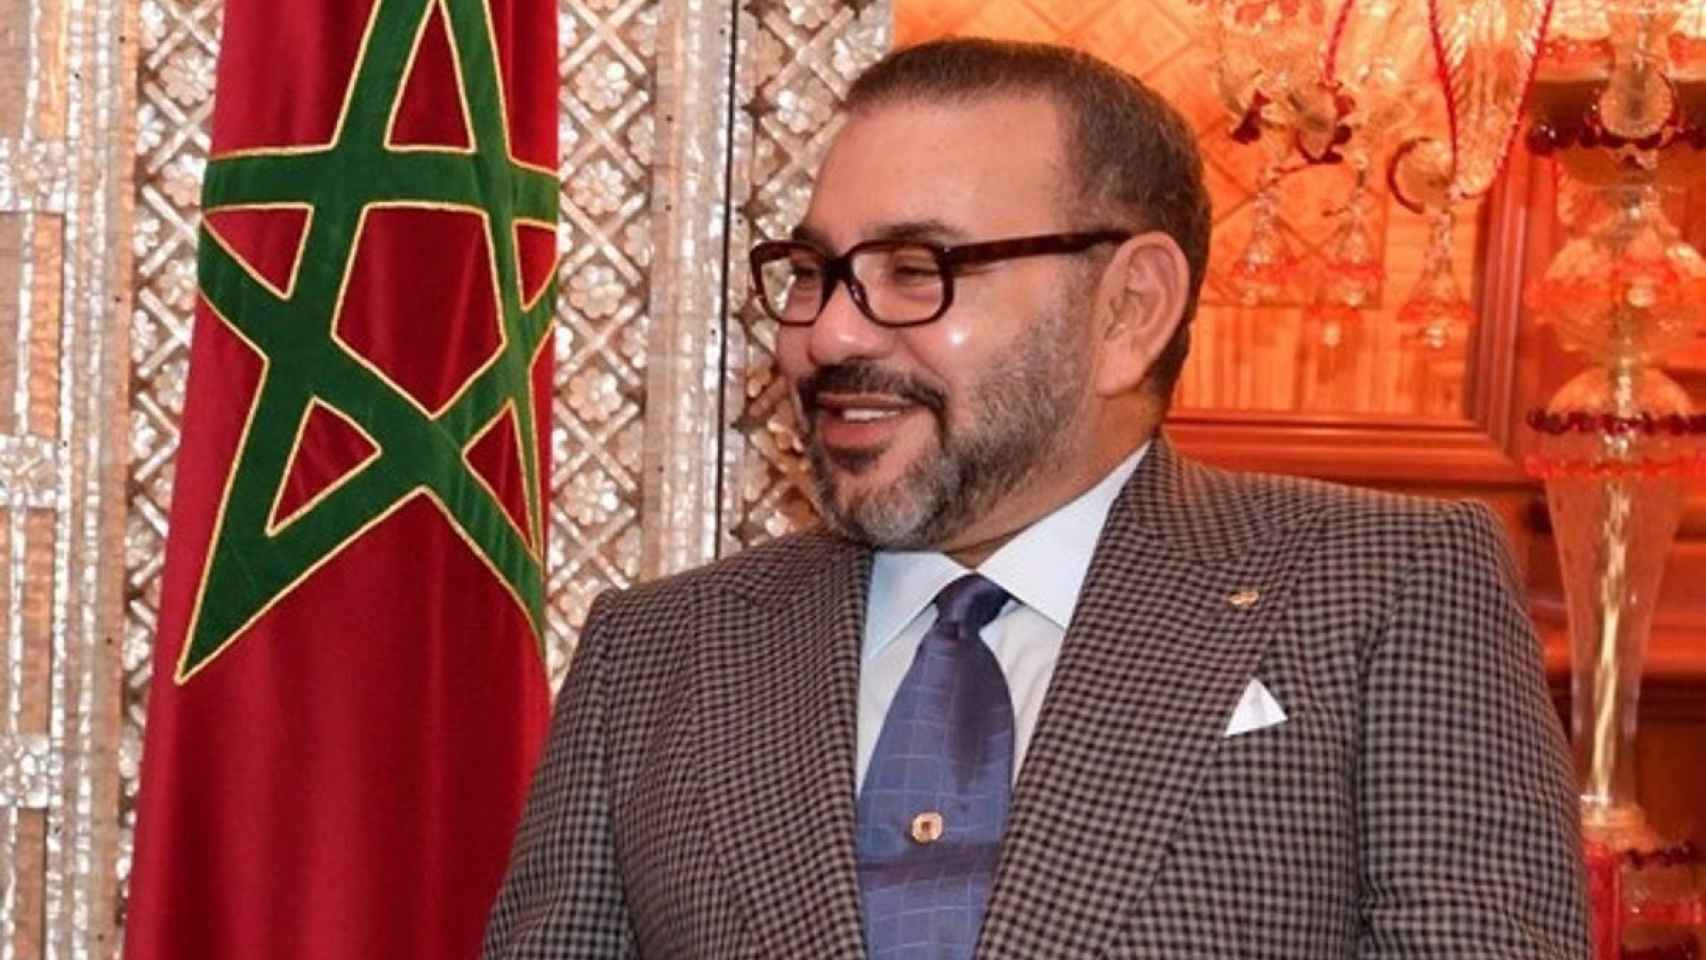 El rey de Marrueco, Mohamed VI.